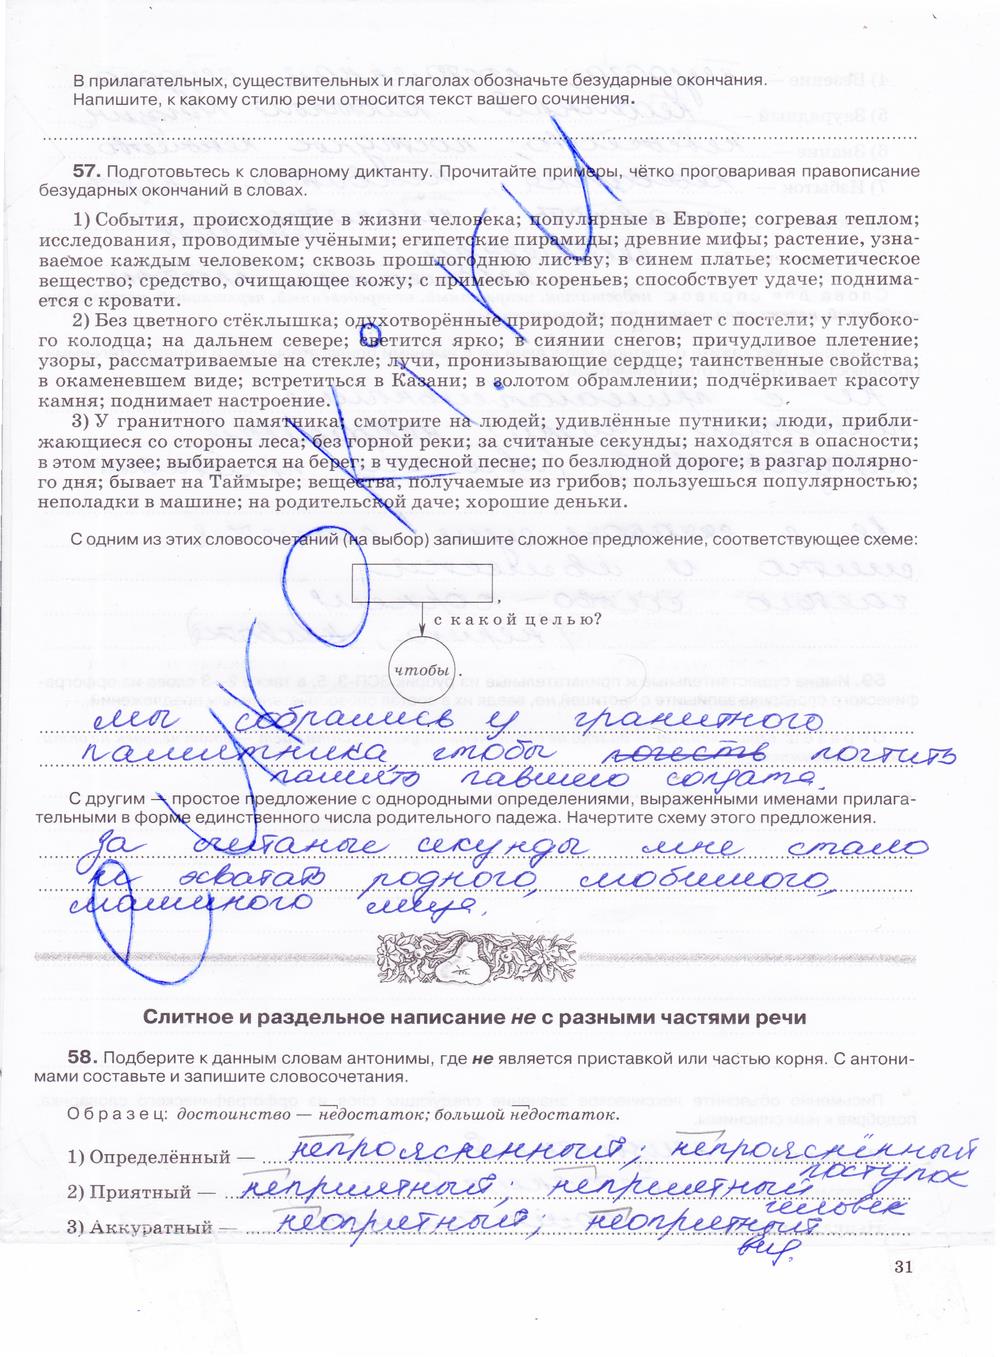 гдз 7 класс рабочая тетрадь страница 31 русский язык Ларионова